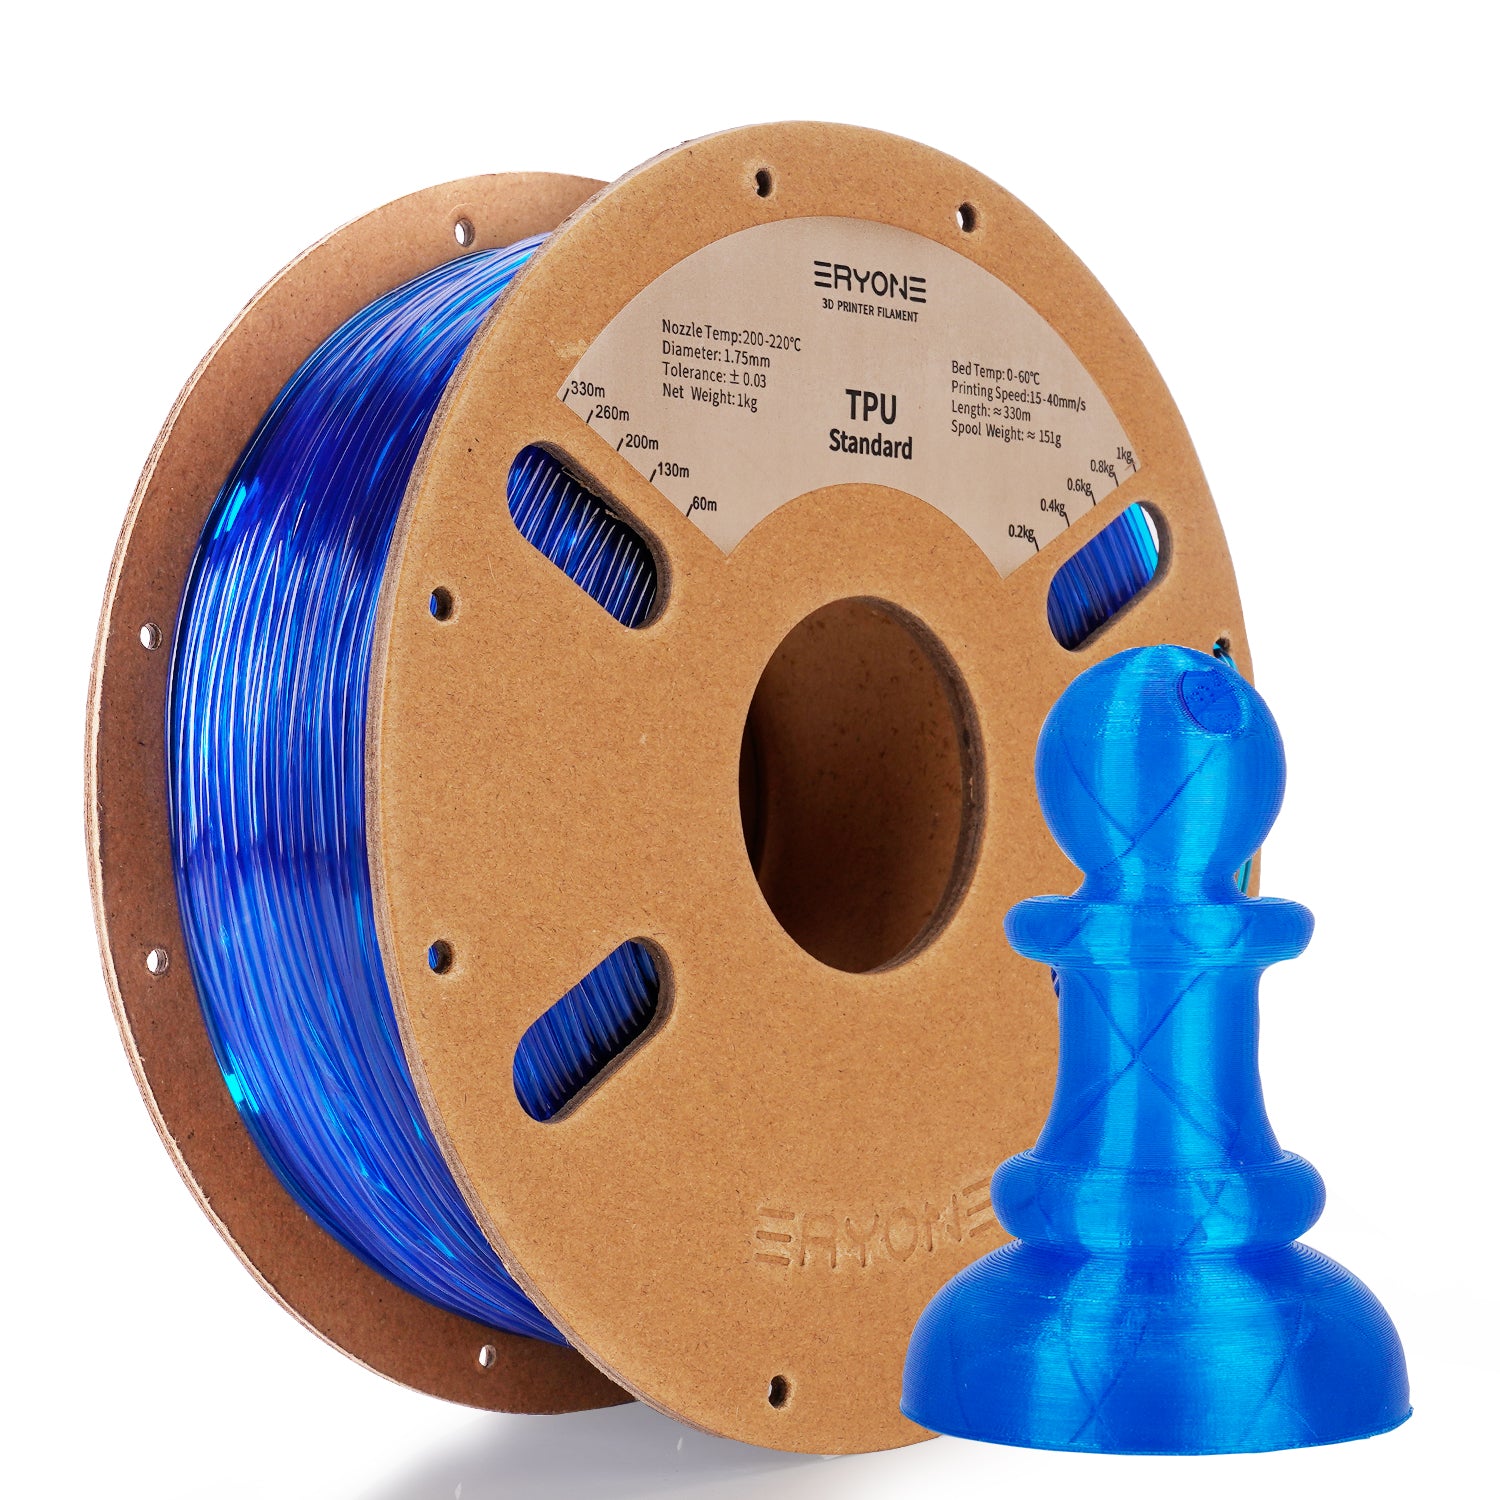 Pre-sale Filament pour imprimante 3D ERYONE 1.75mm TPU, précision dimensionnelle +/- 0.05 mm, 0.5kg (1.1 LB) / Bobine(MOQ:20 Rolls)